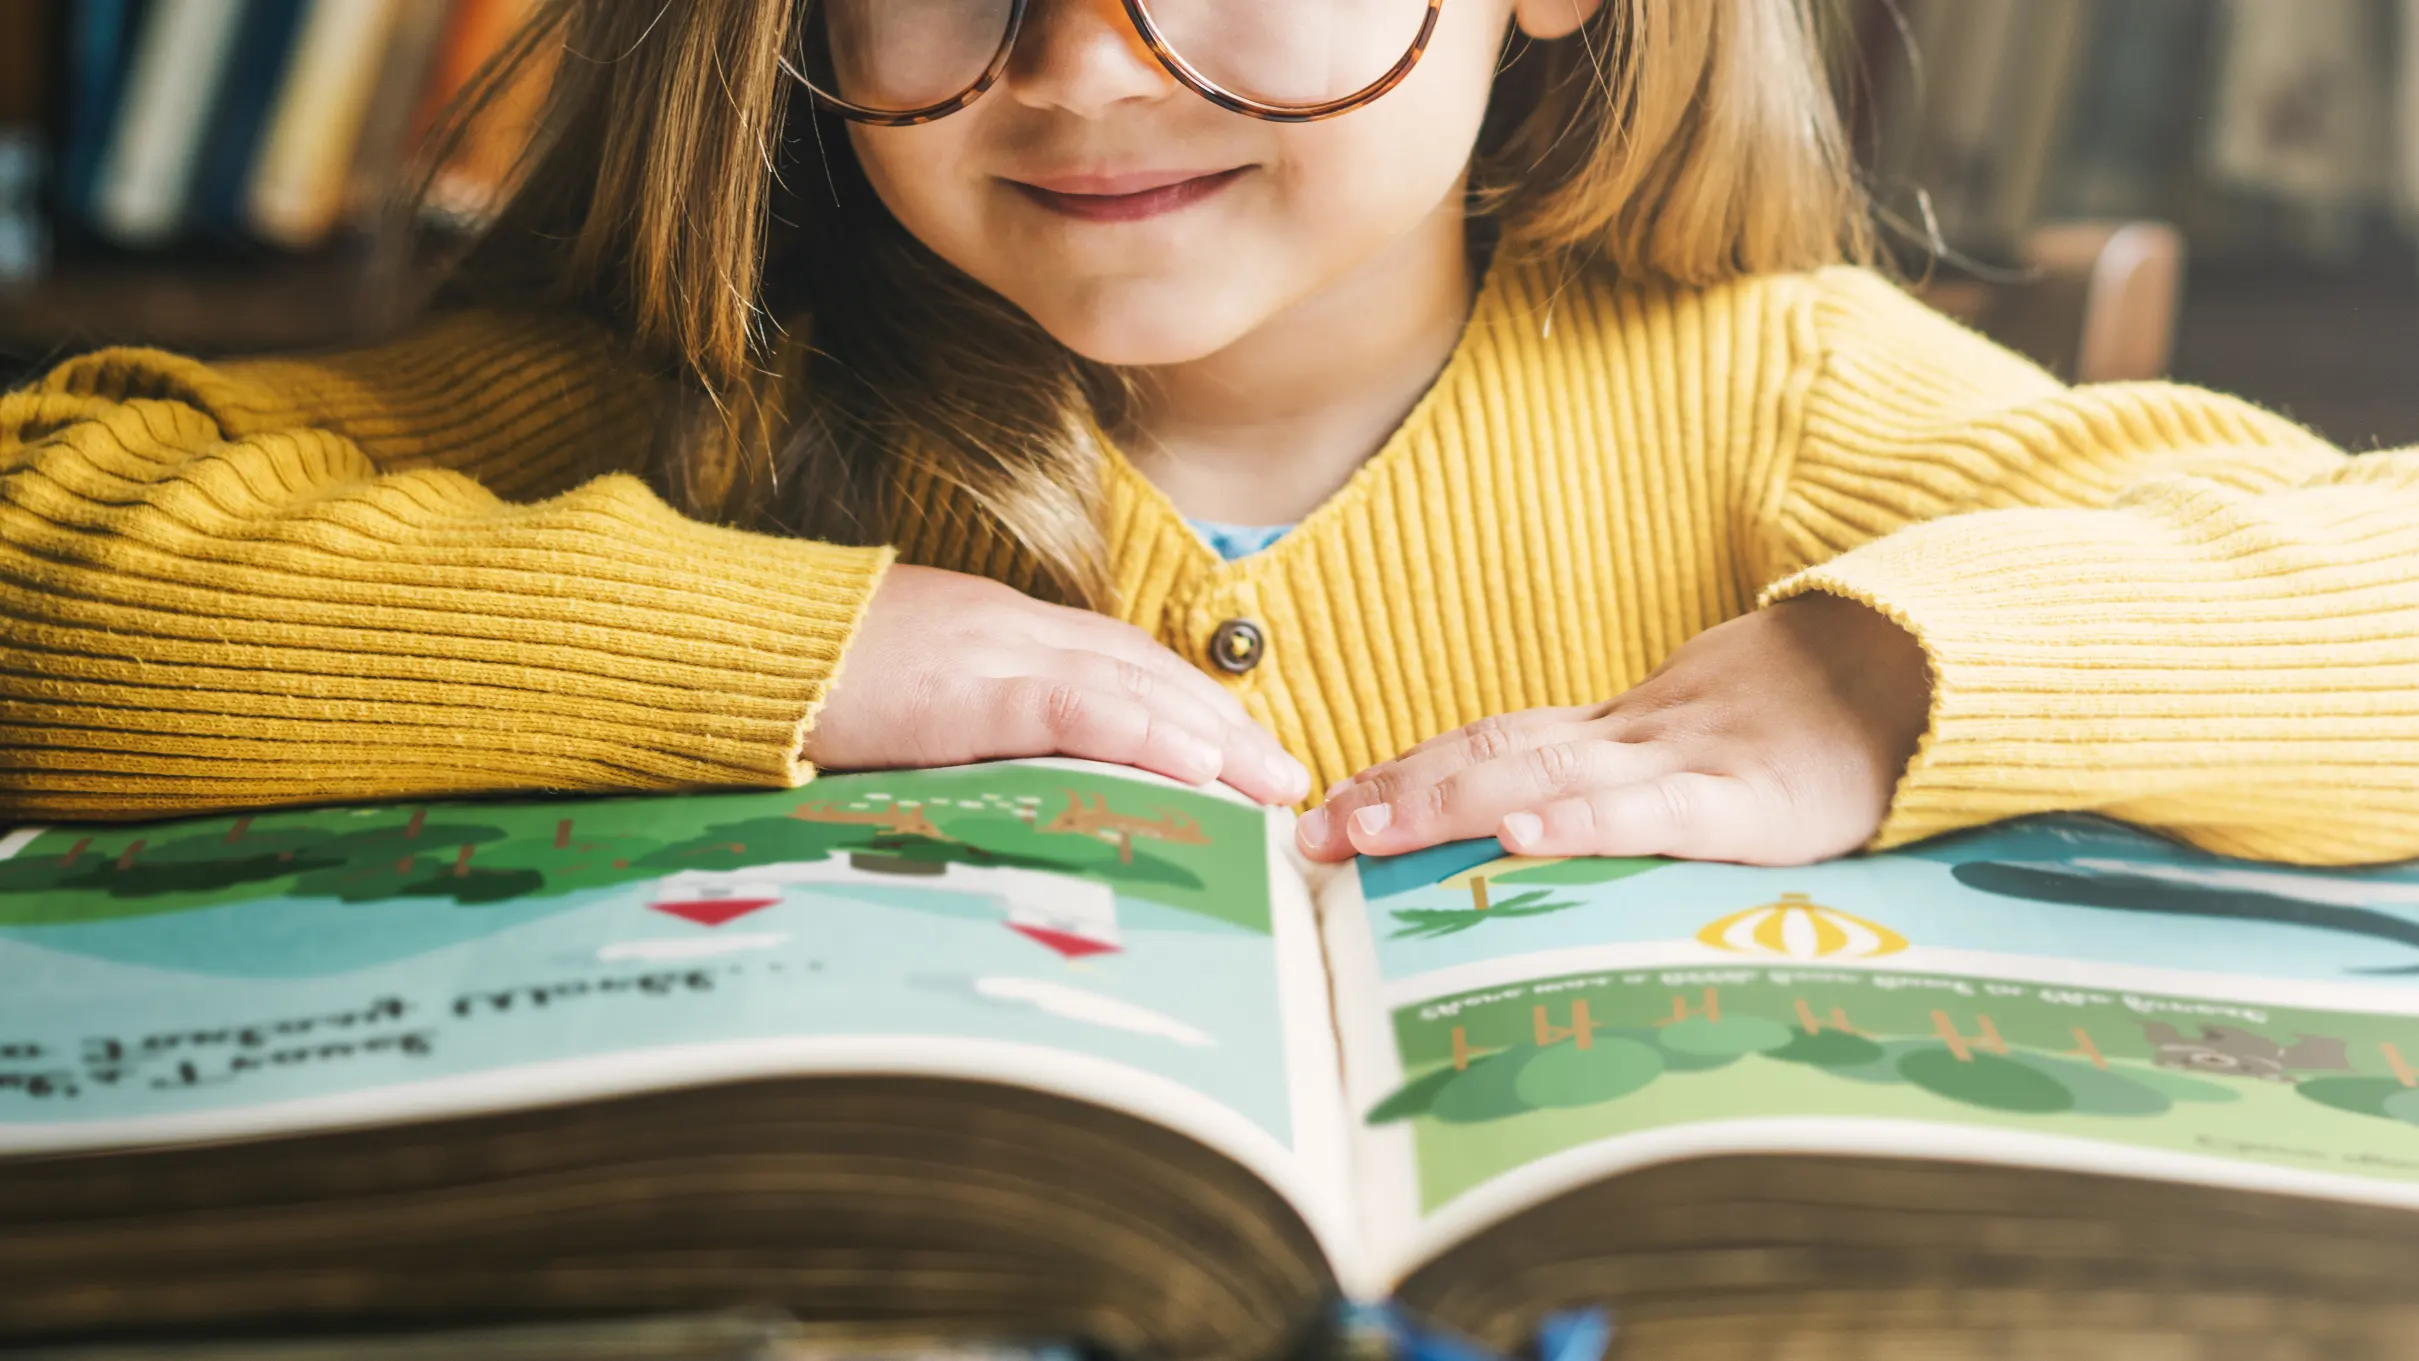 Libros para niños: ¿cómo deben ser de los 3 a los 5 años?